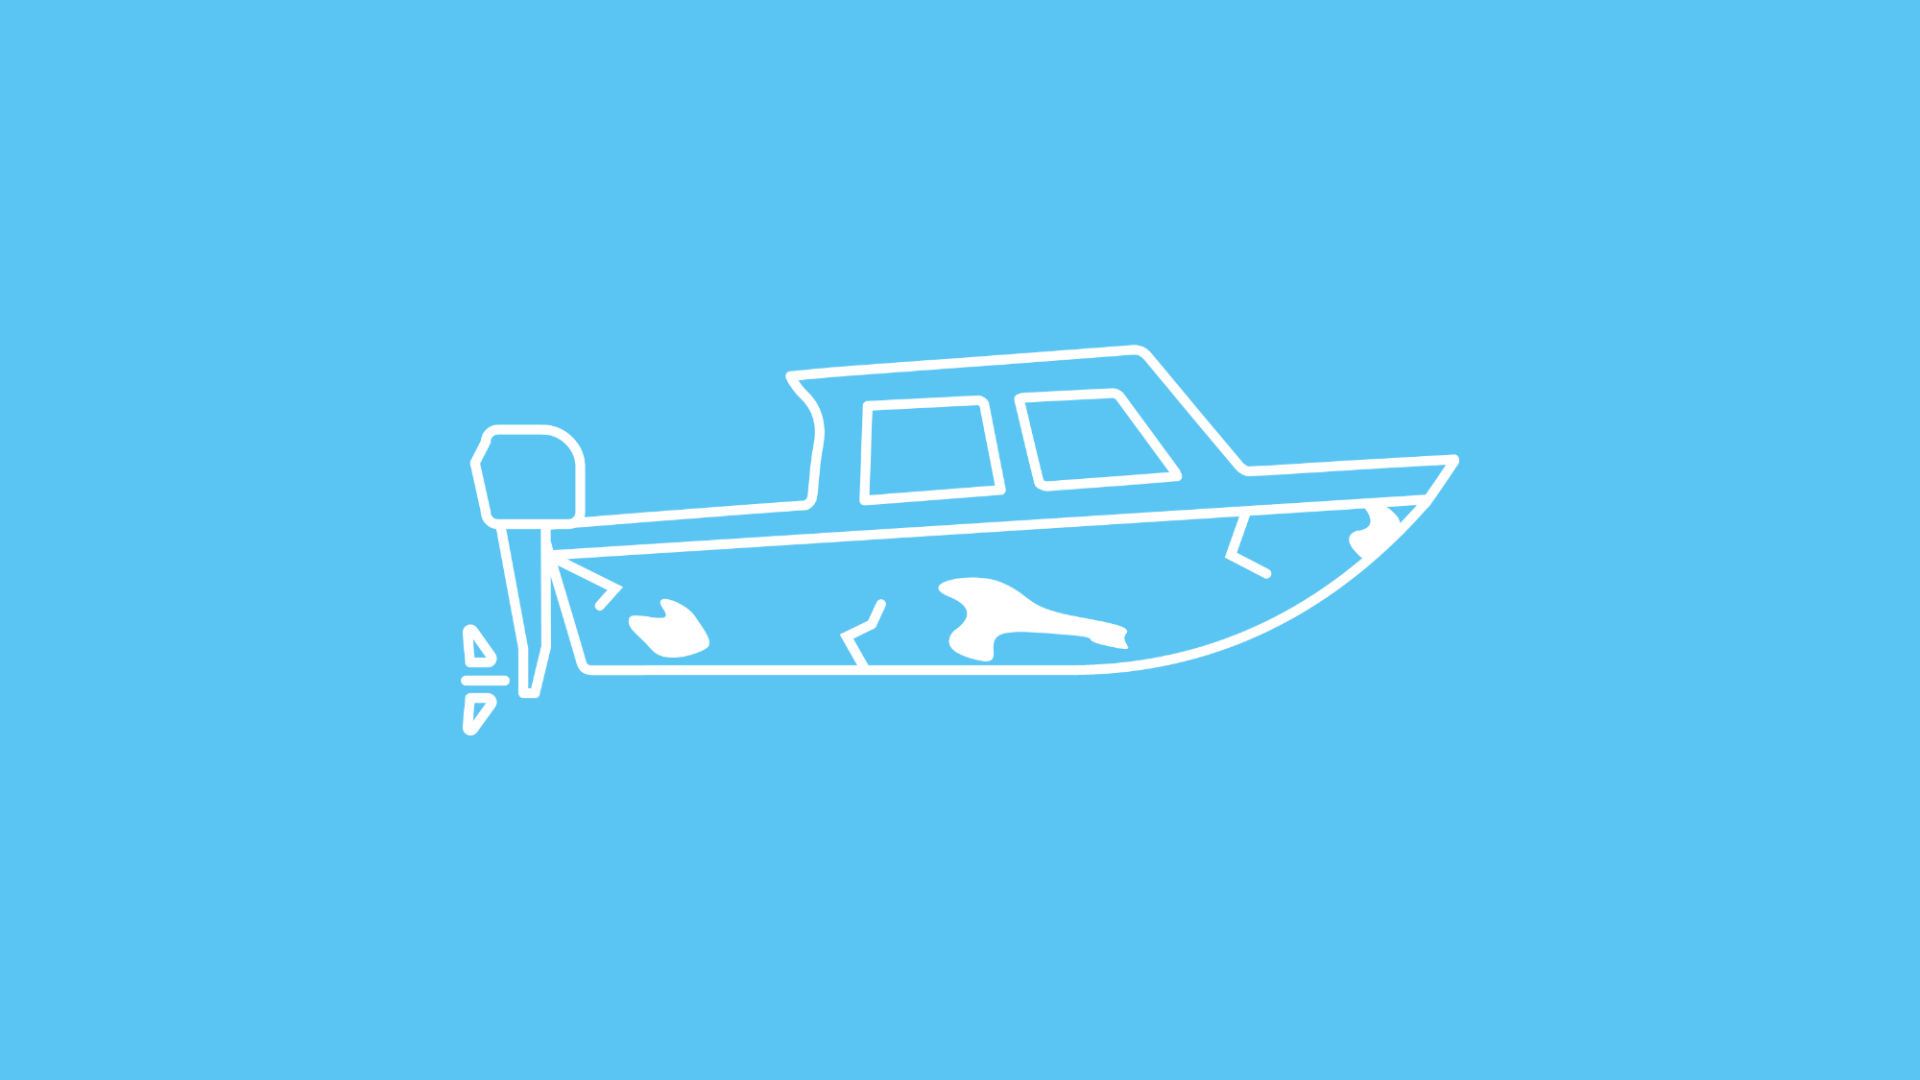 Das Bild zeigt ein verwittertes, dreckiges Boot mit Rissen, das eine Politur nötig hat. 